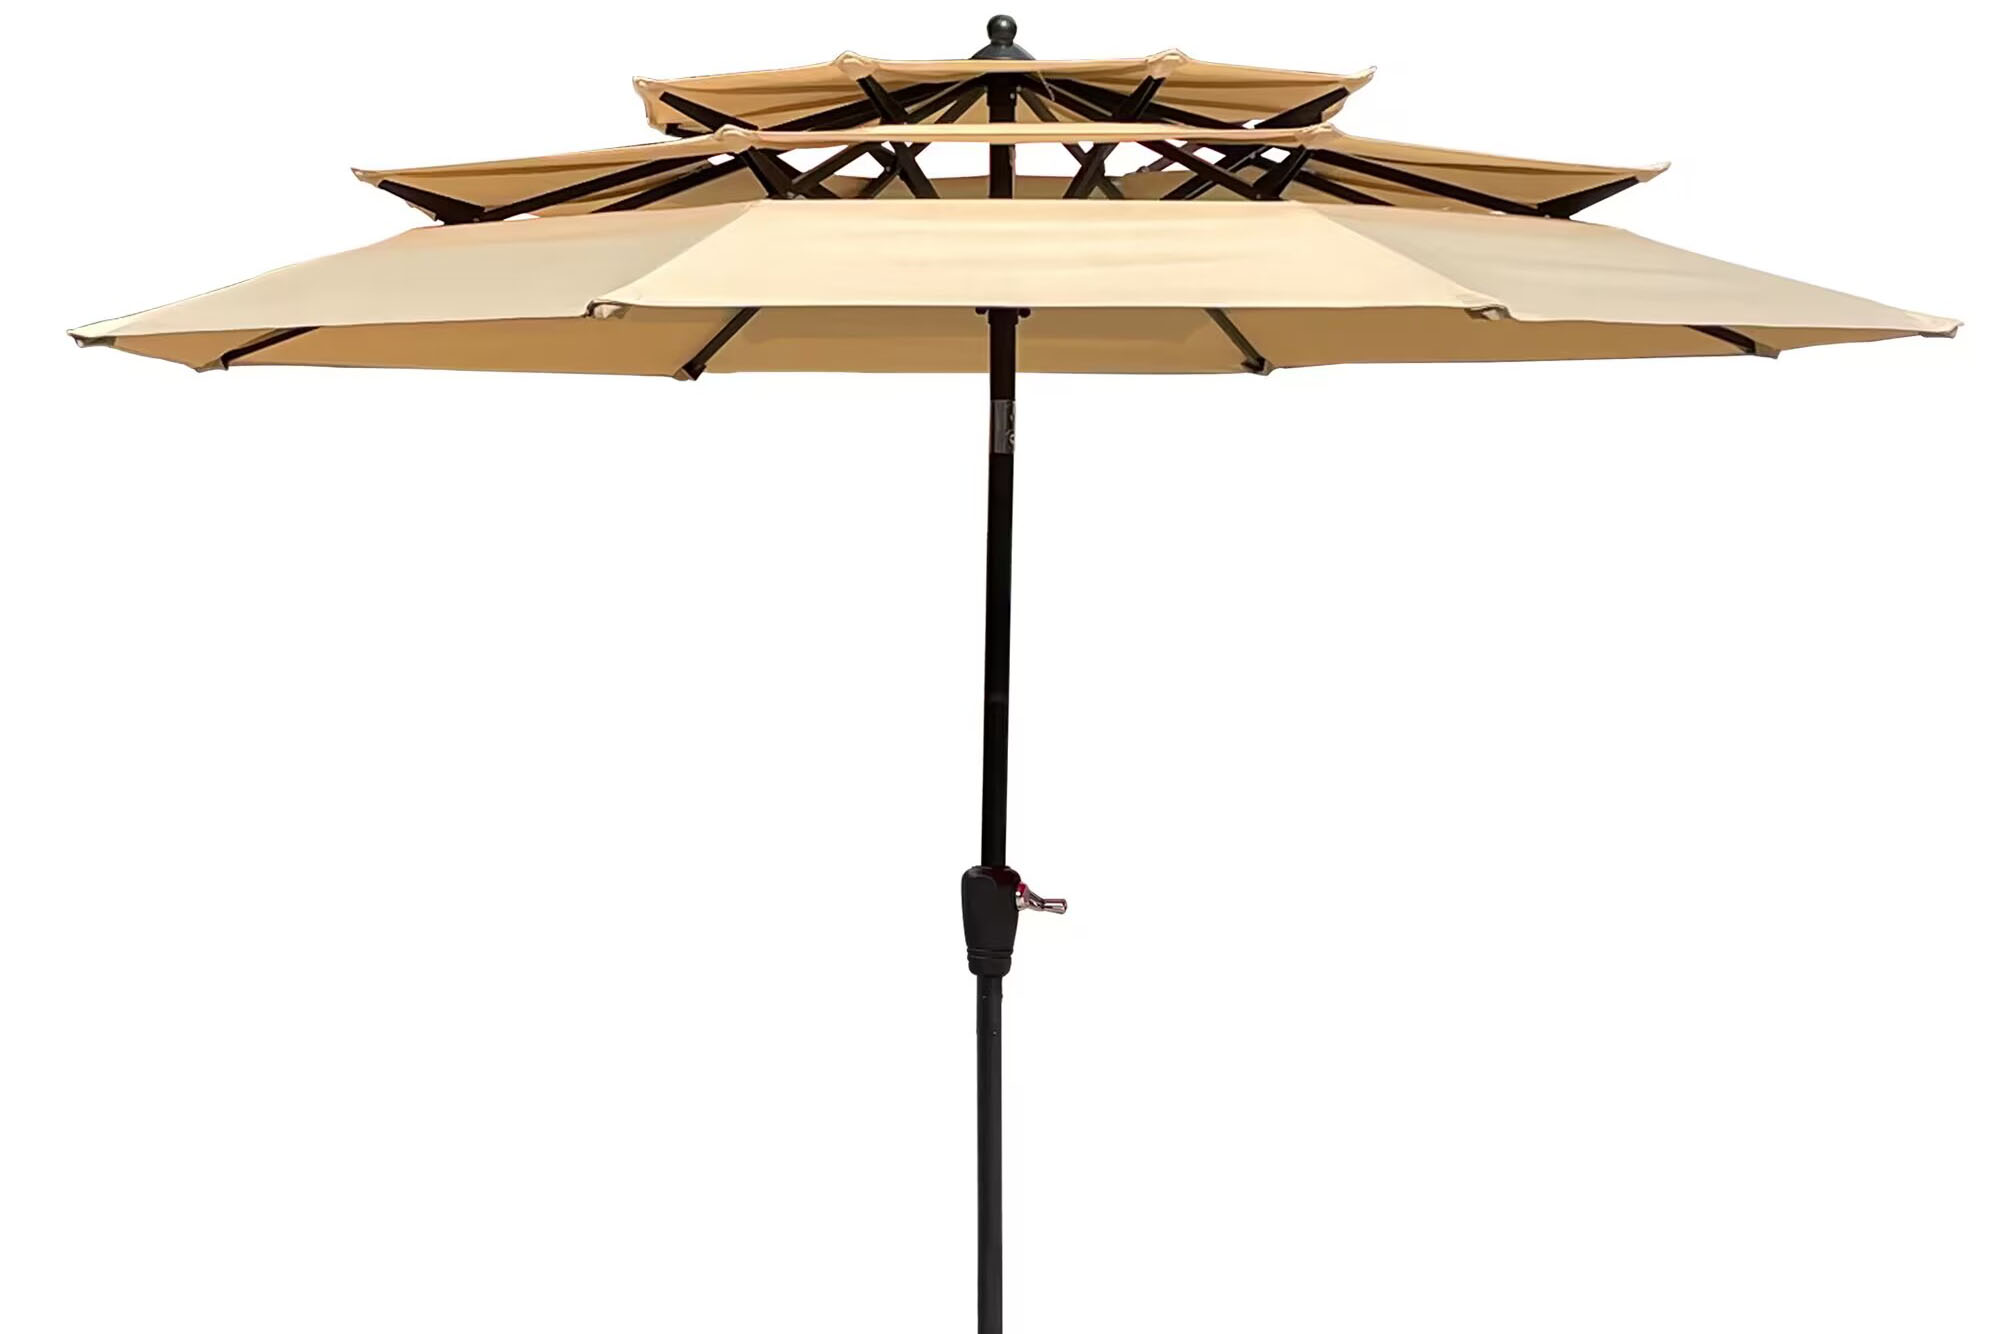  Outdoor Umbrella Garden Umbrella For Patio Umbrellas